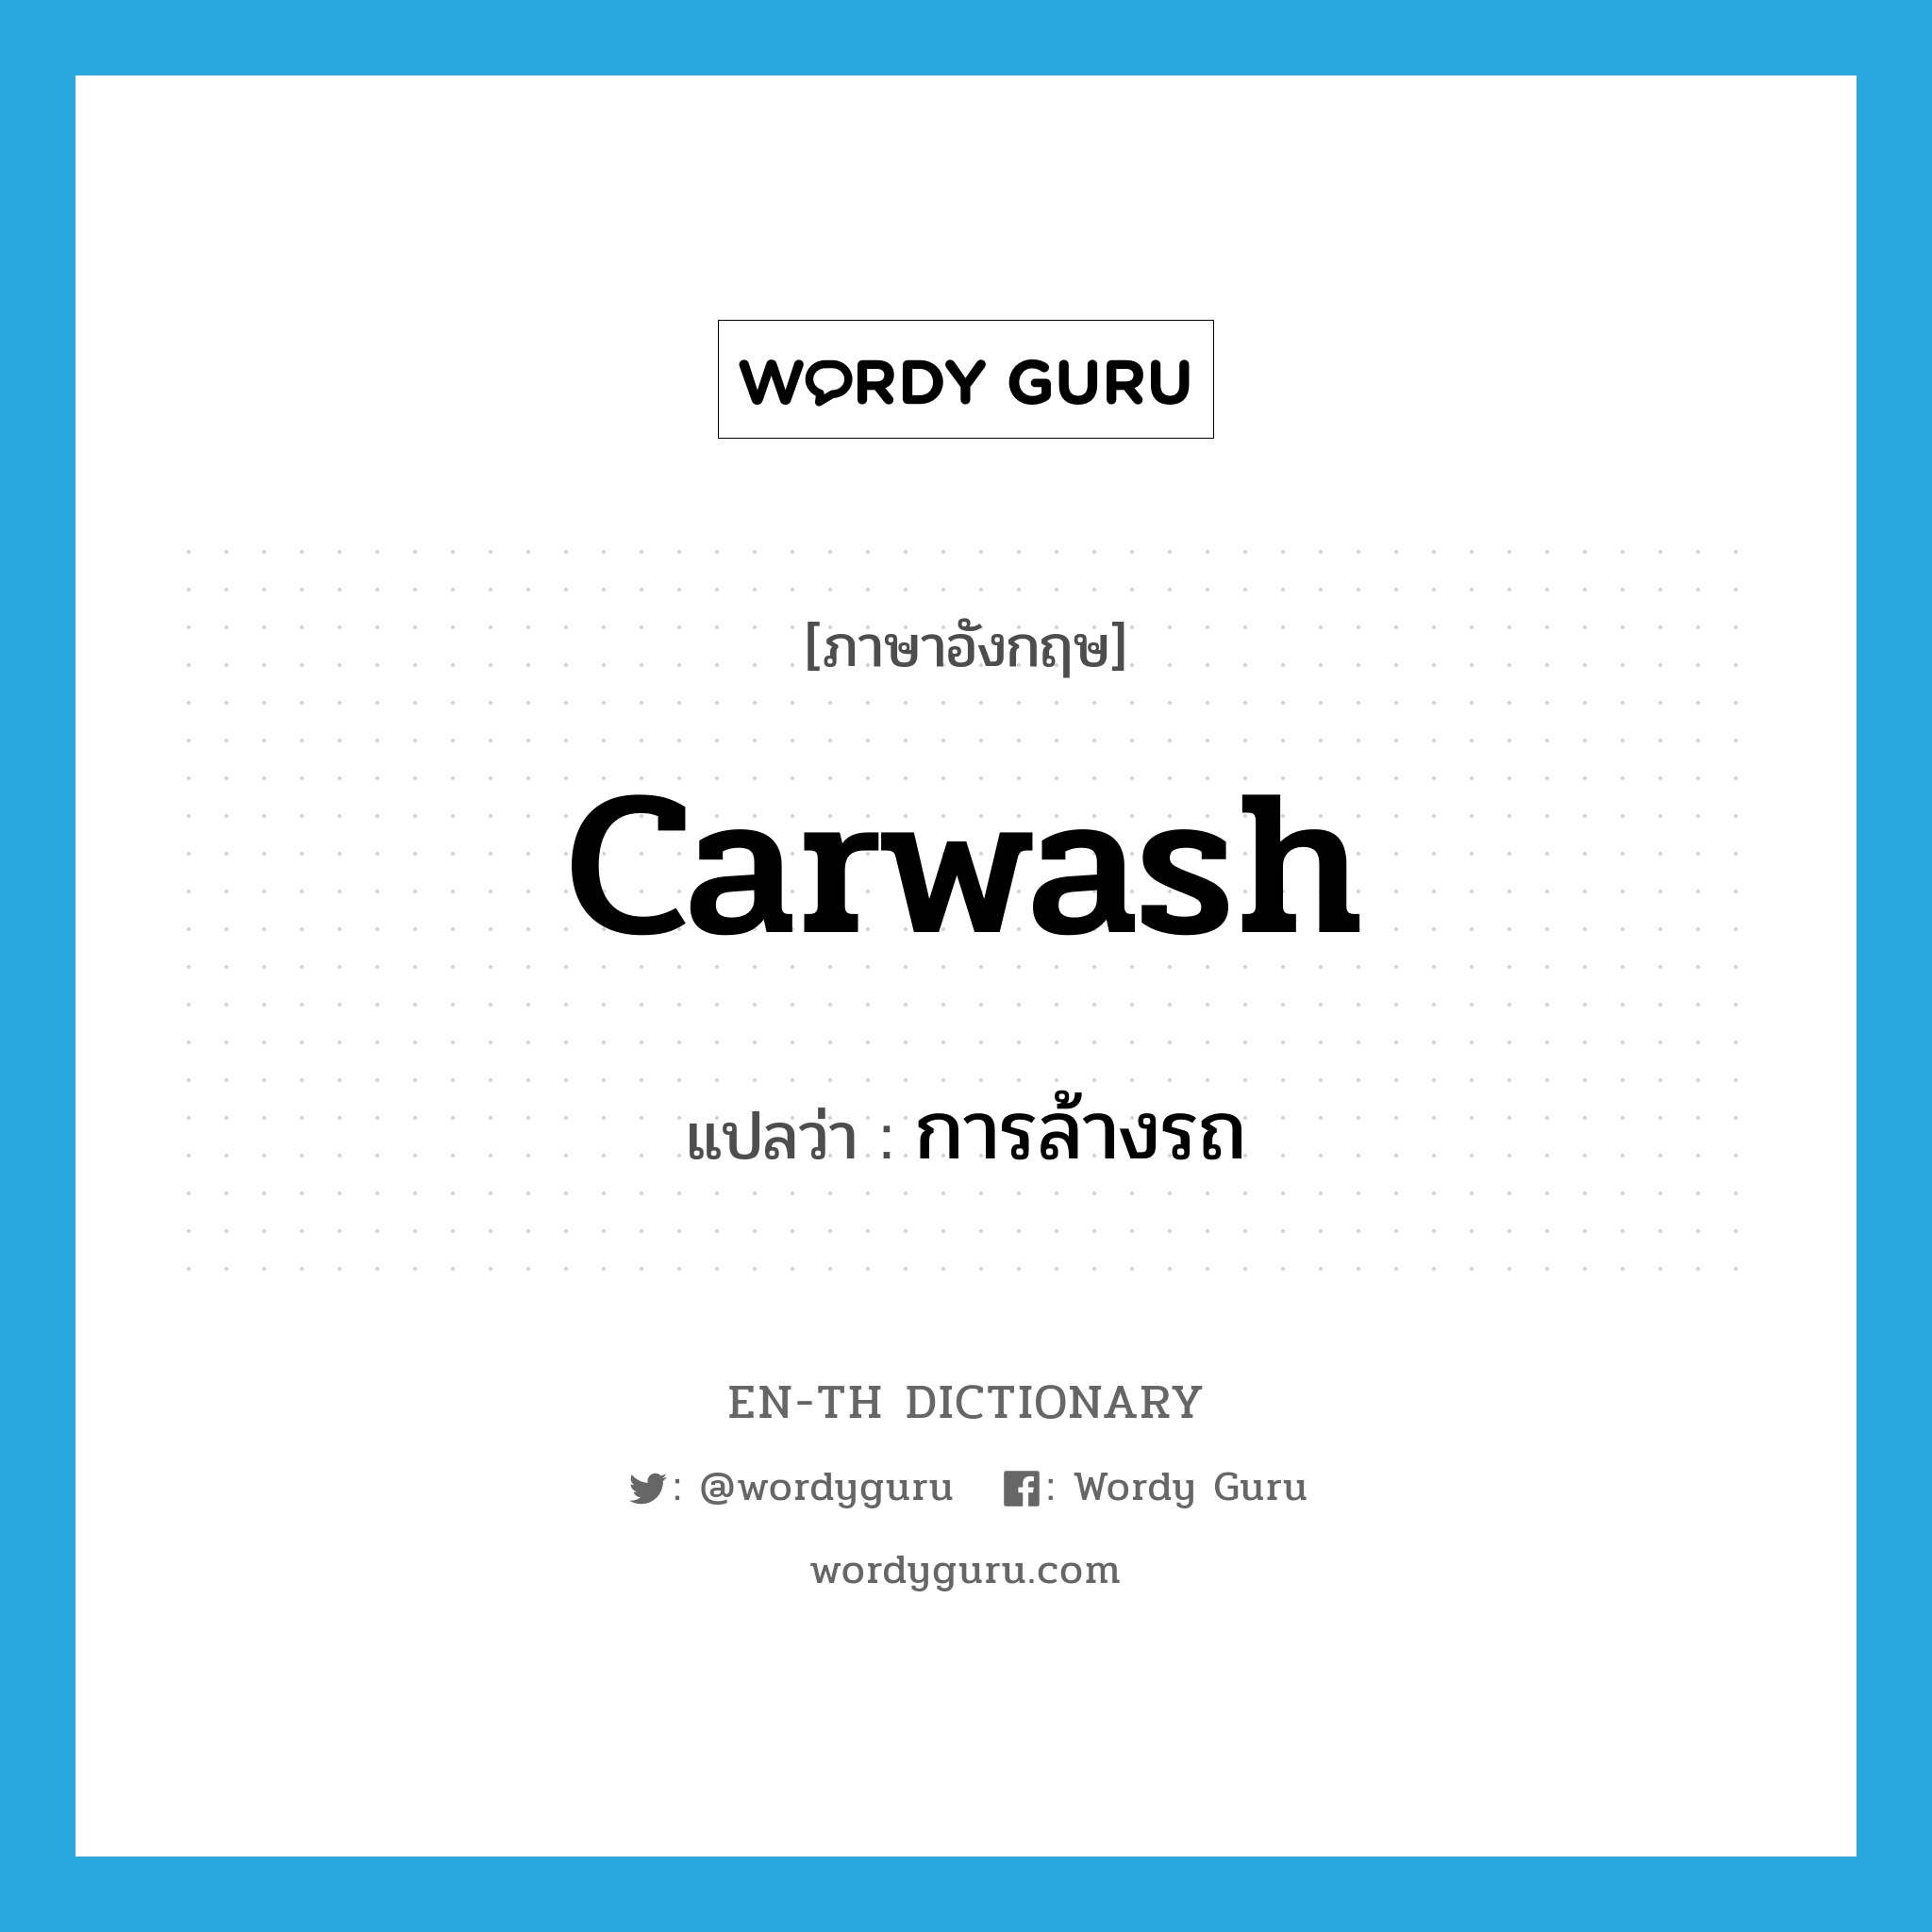 การล้างรถ ภาษาอังกฤษ?, คำศัพท์ภาษาอังกฤษ การล้างรถ แปลว่า carwash ประเภท N หมวด N